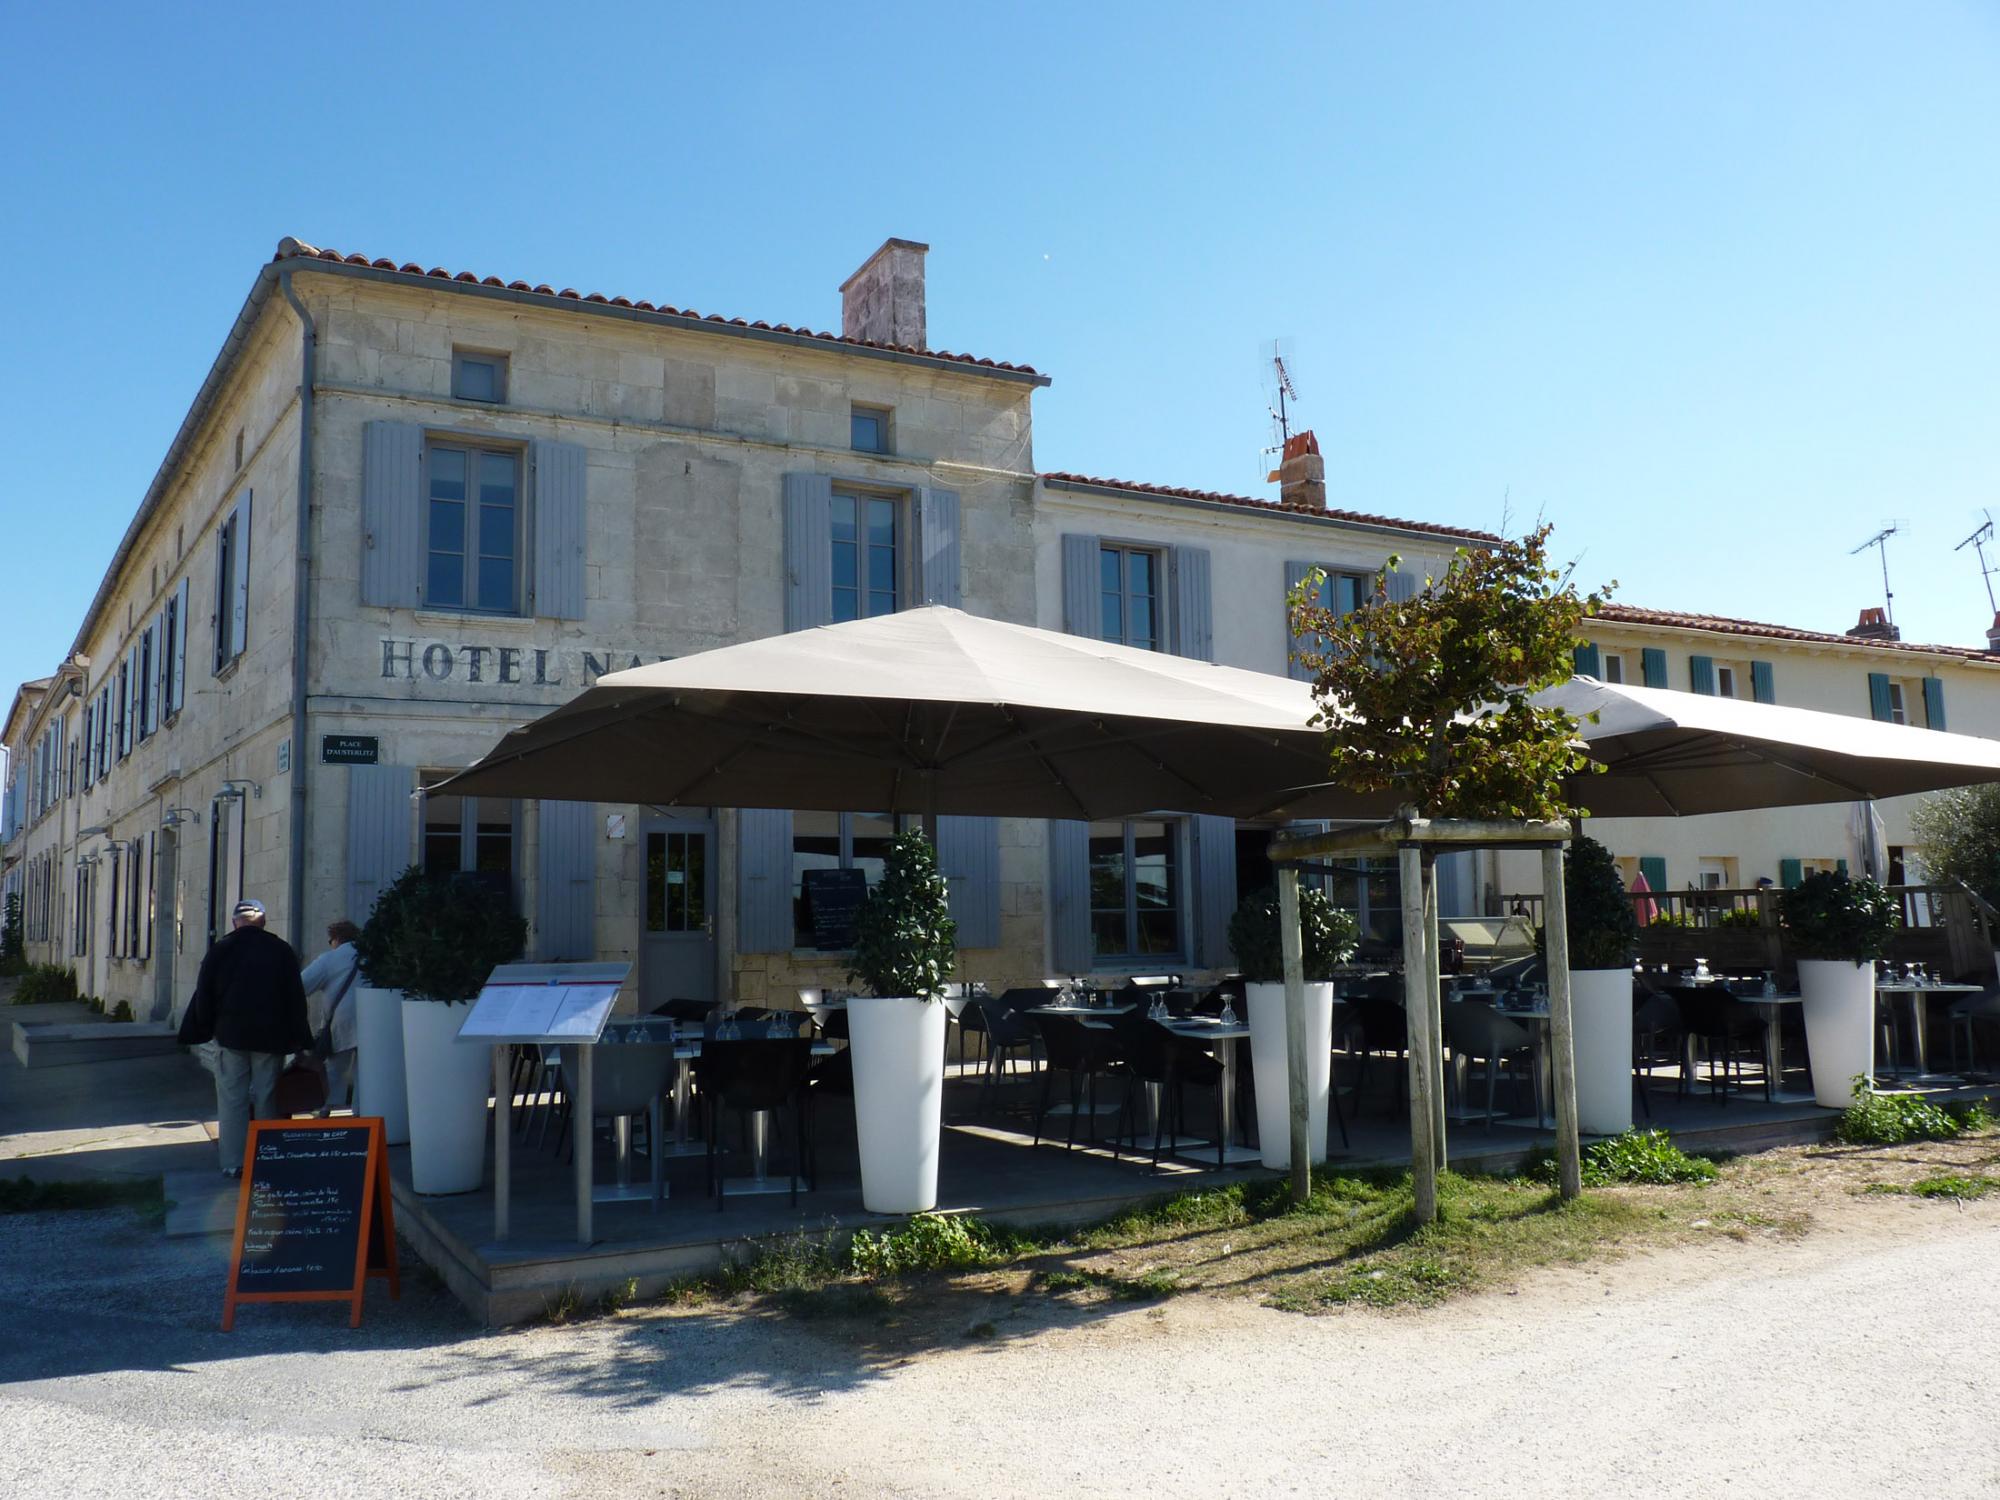 Gastronomie op het Aix eiland - Overtochten met de veerboten Fouras / Aix eiland